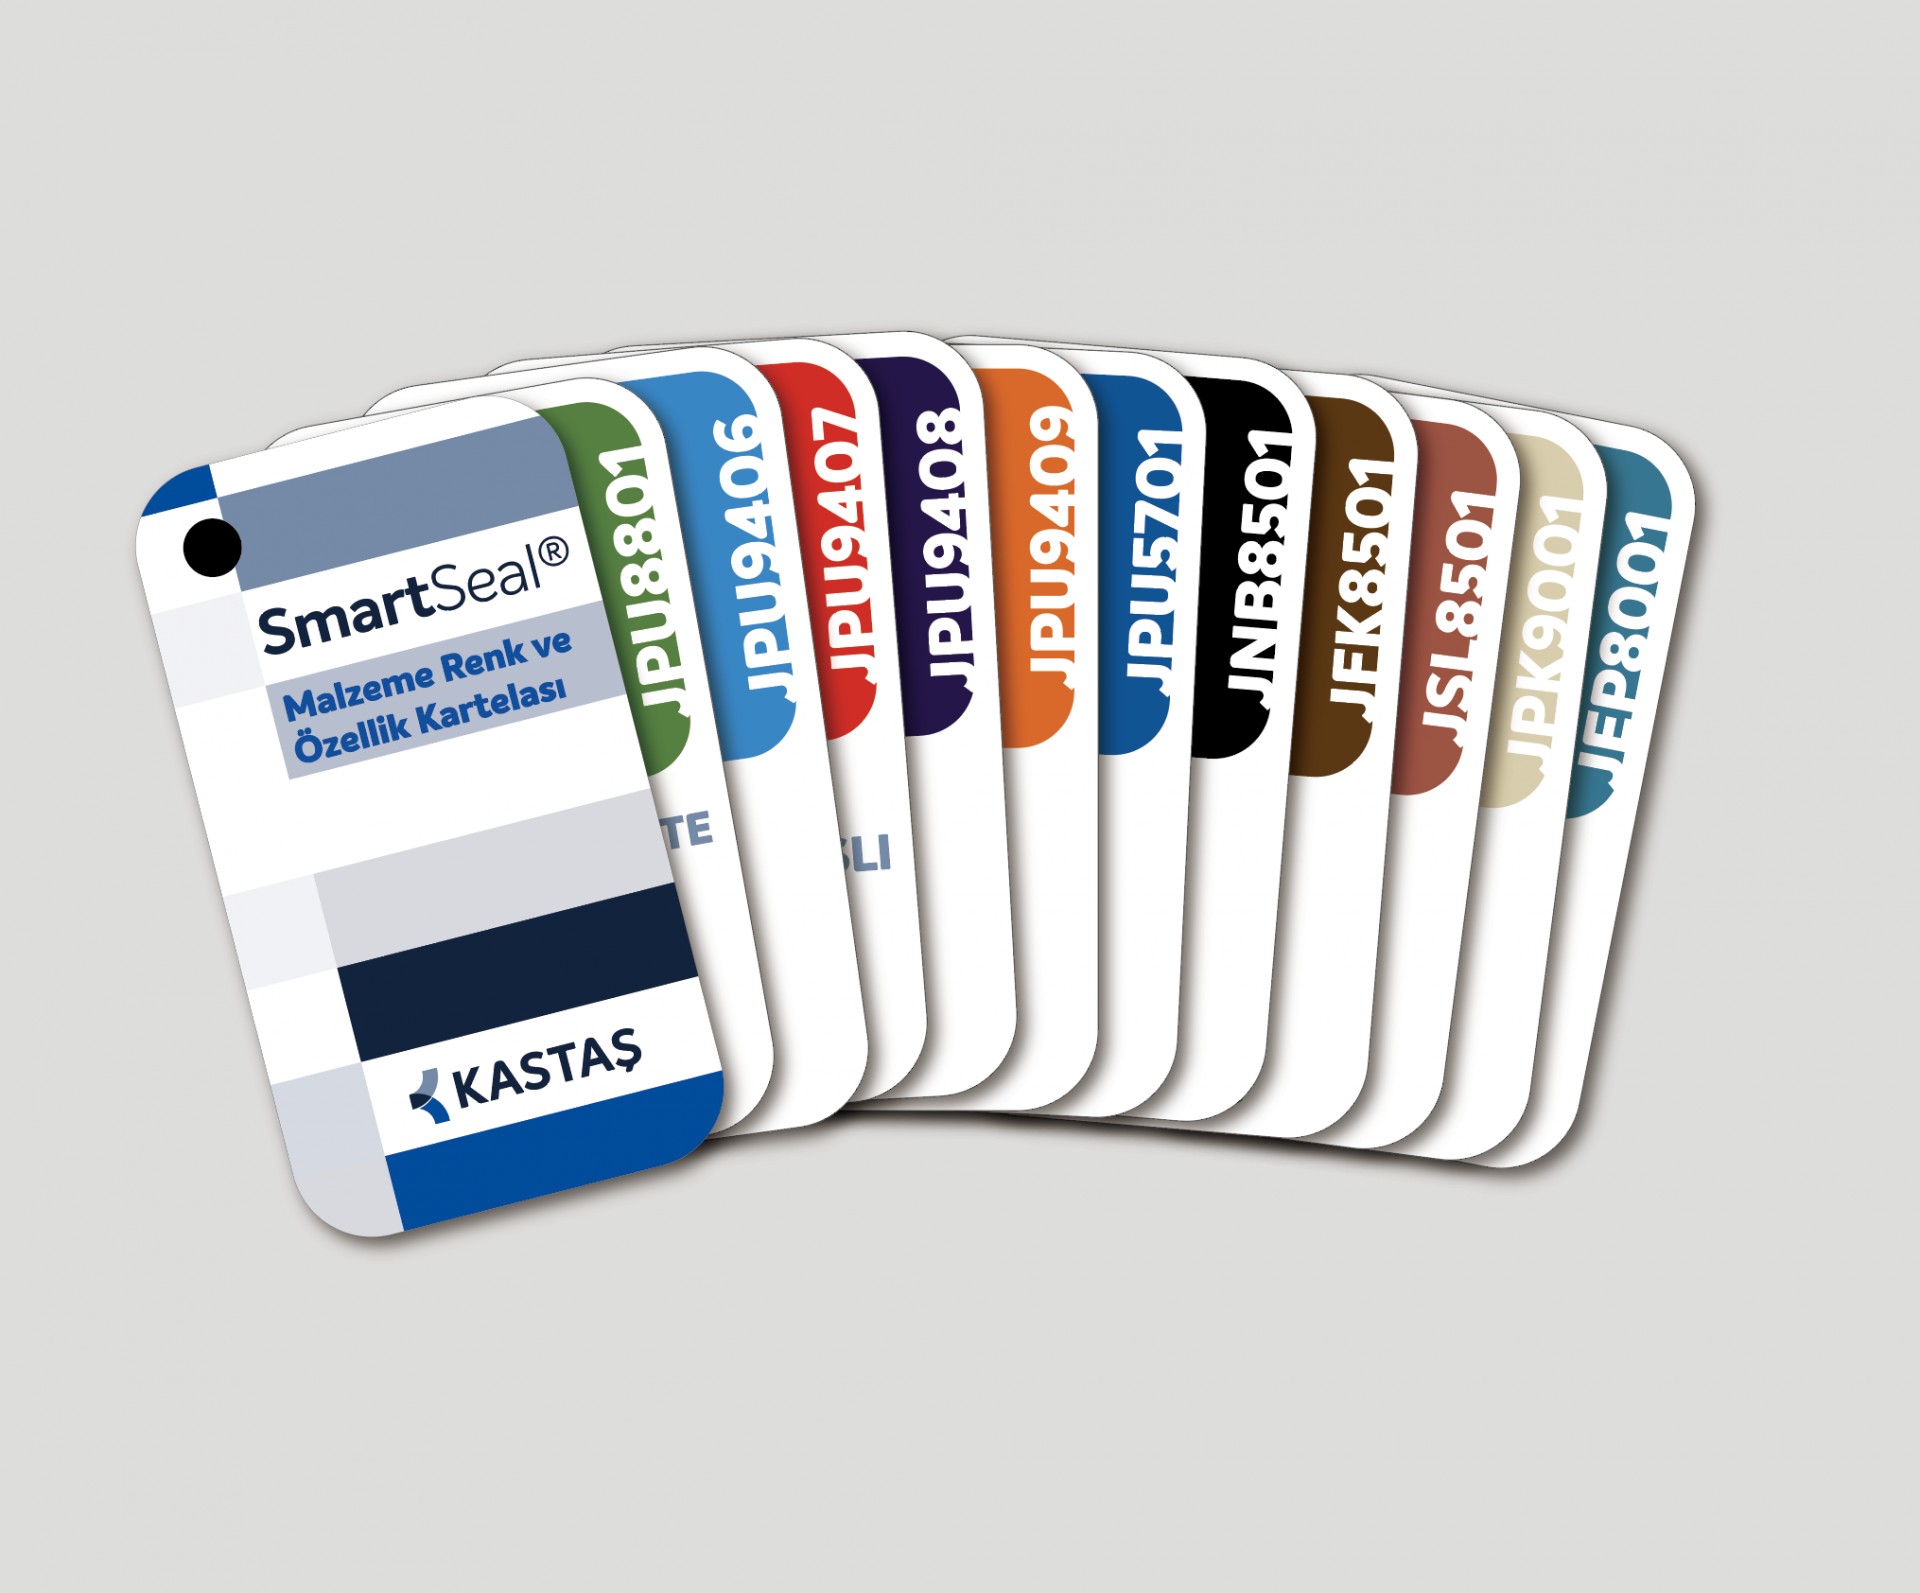 Kastaş SmartSeal® Malzeme Renk ve Özellik Kartelasını Müşterileriyle Buluşturdu